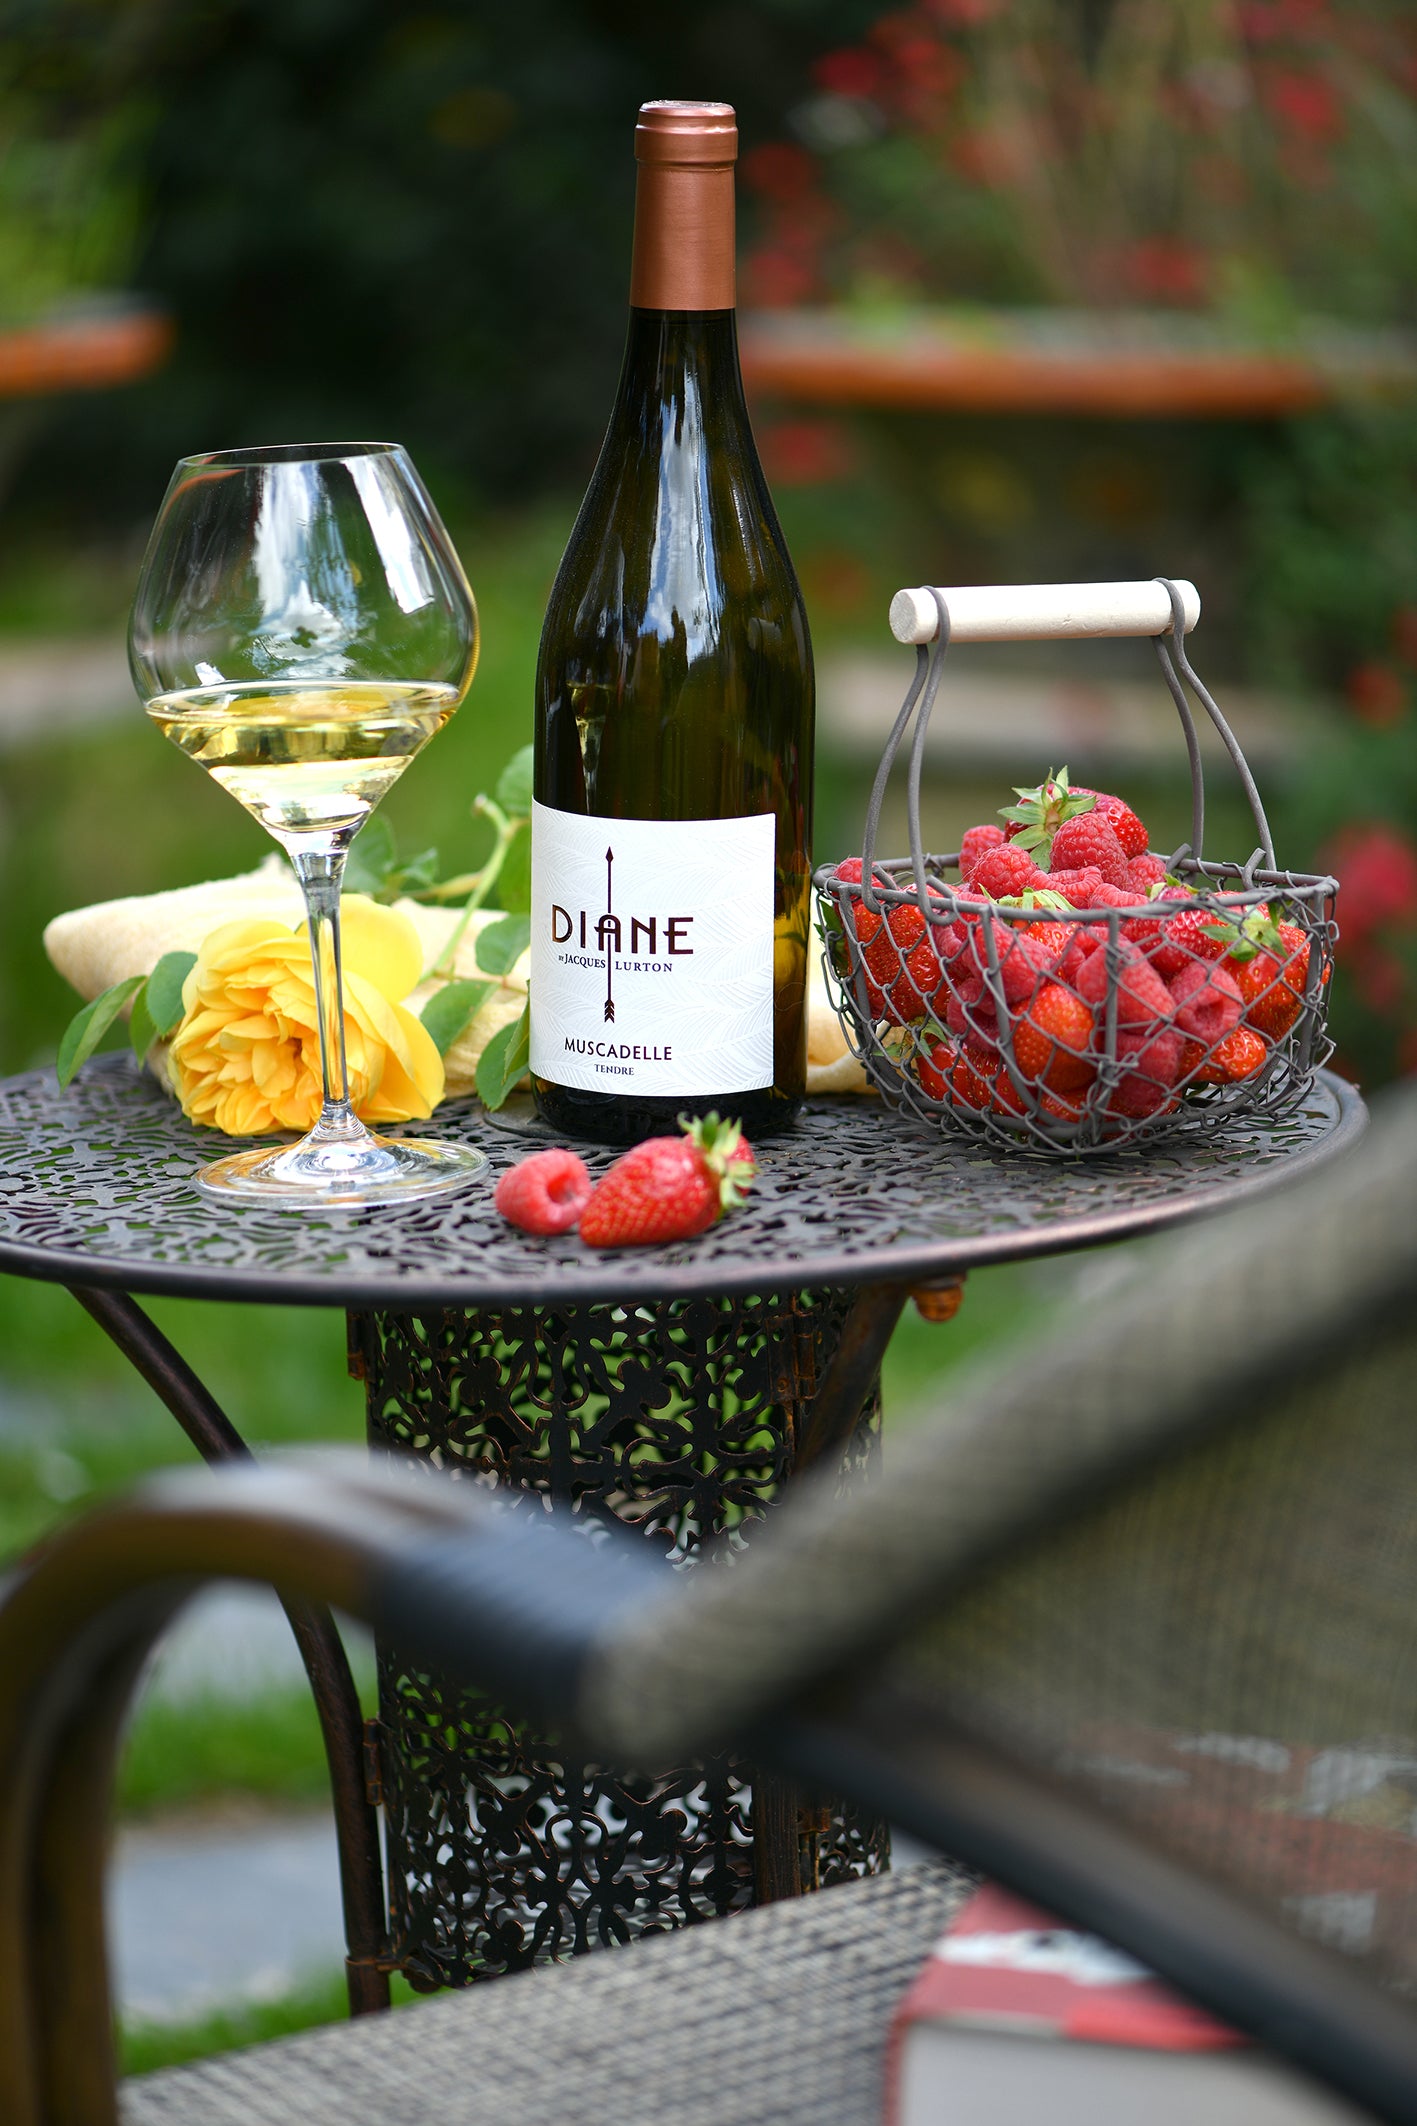 DIANE by Jacques Lurton MUSCADELLE Tendre - Vin de France - 2020 - 1 bouteille x 13,50 €